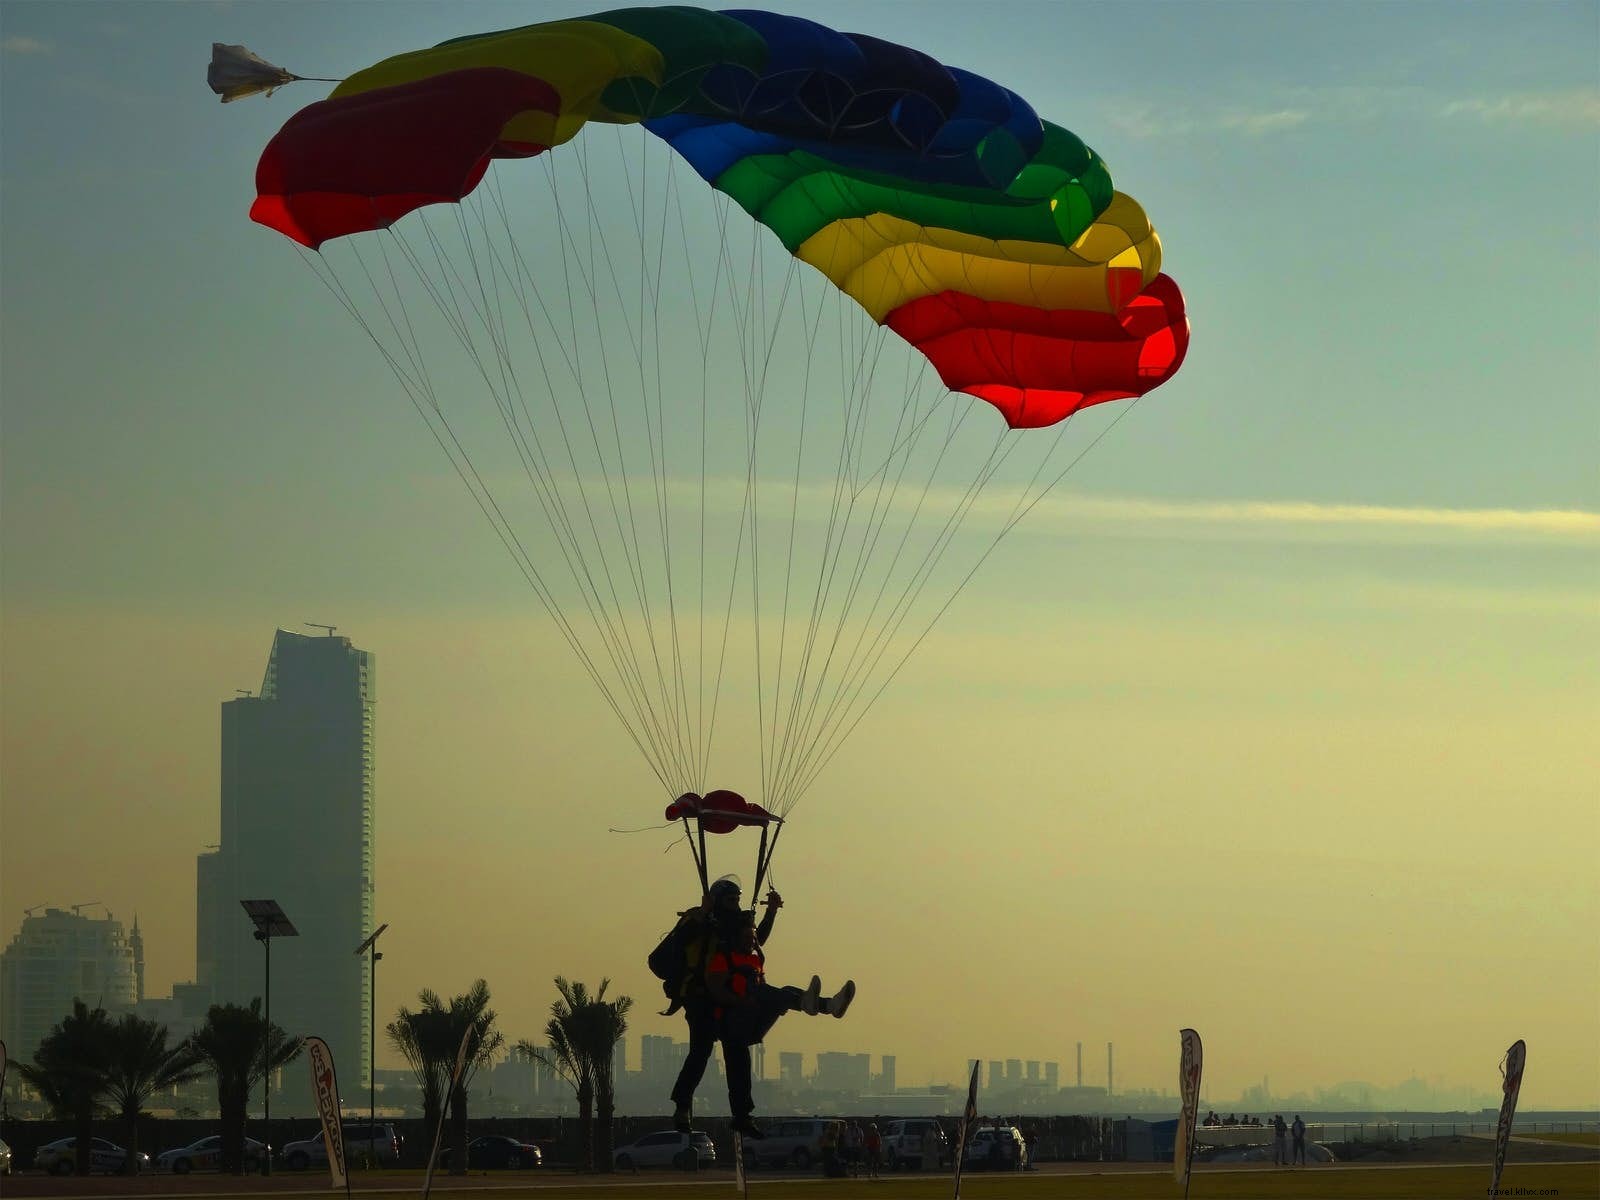 Daredevil Dubai:i migliori sport d avventura dell emirato 